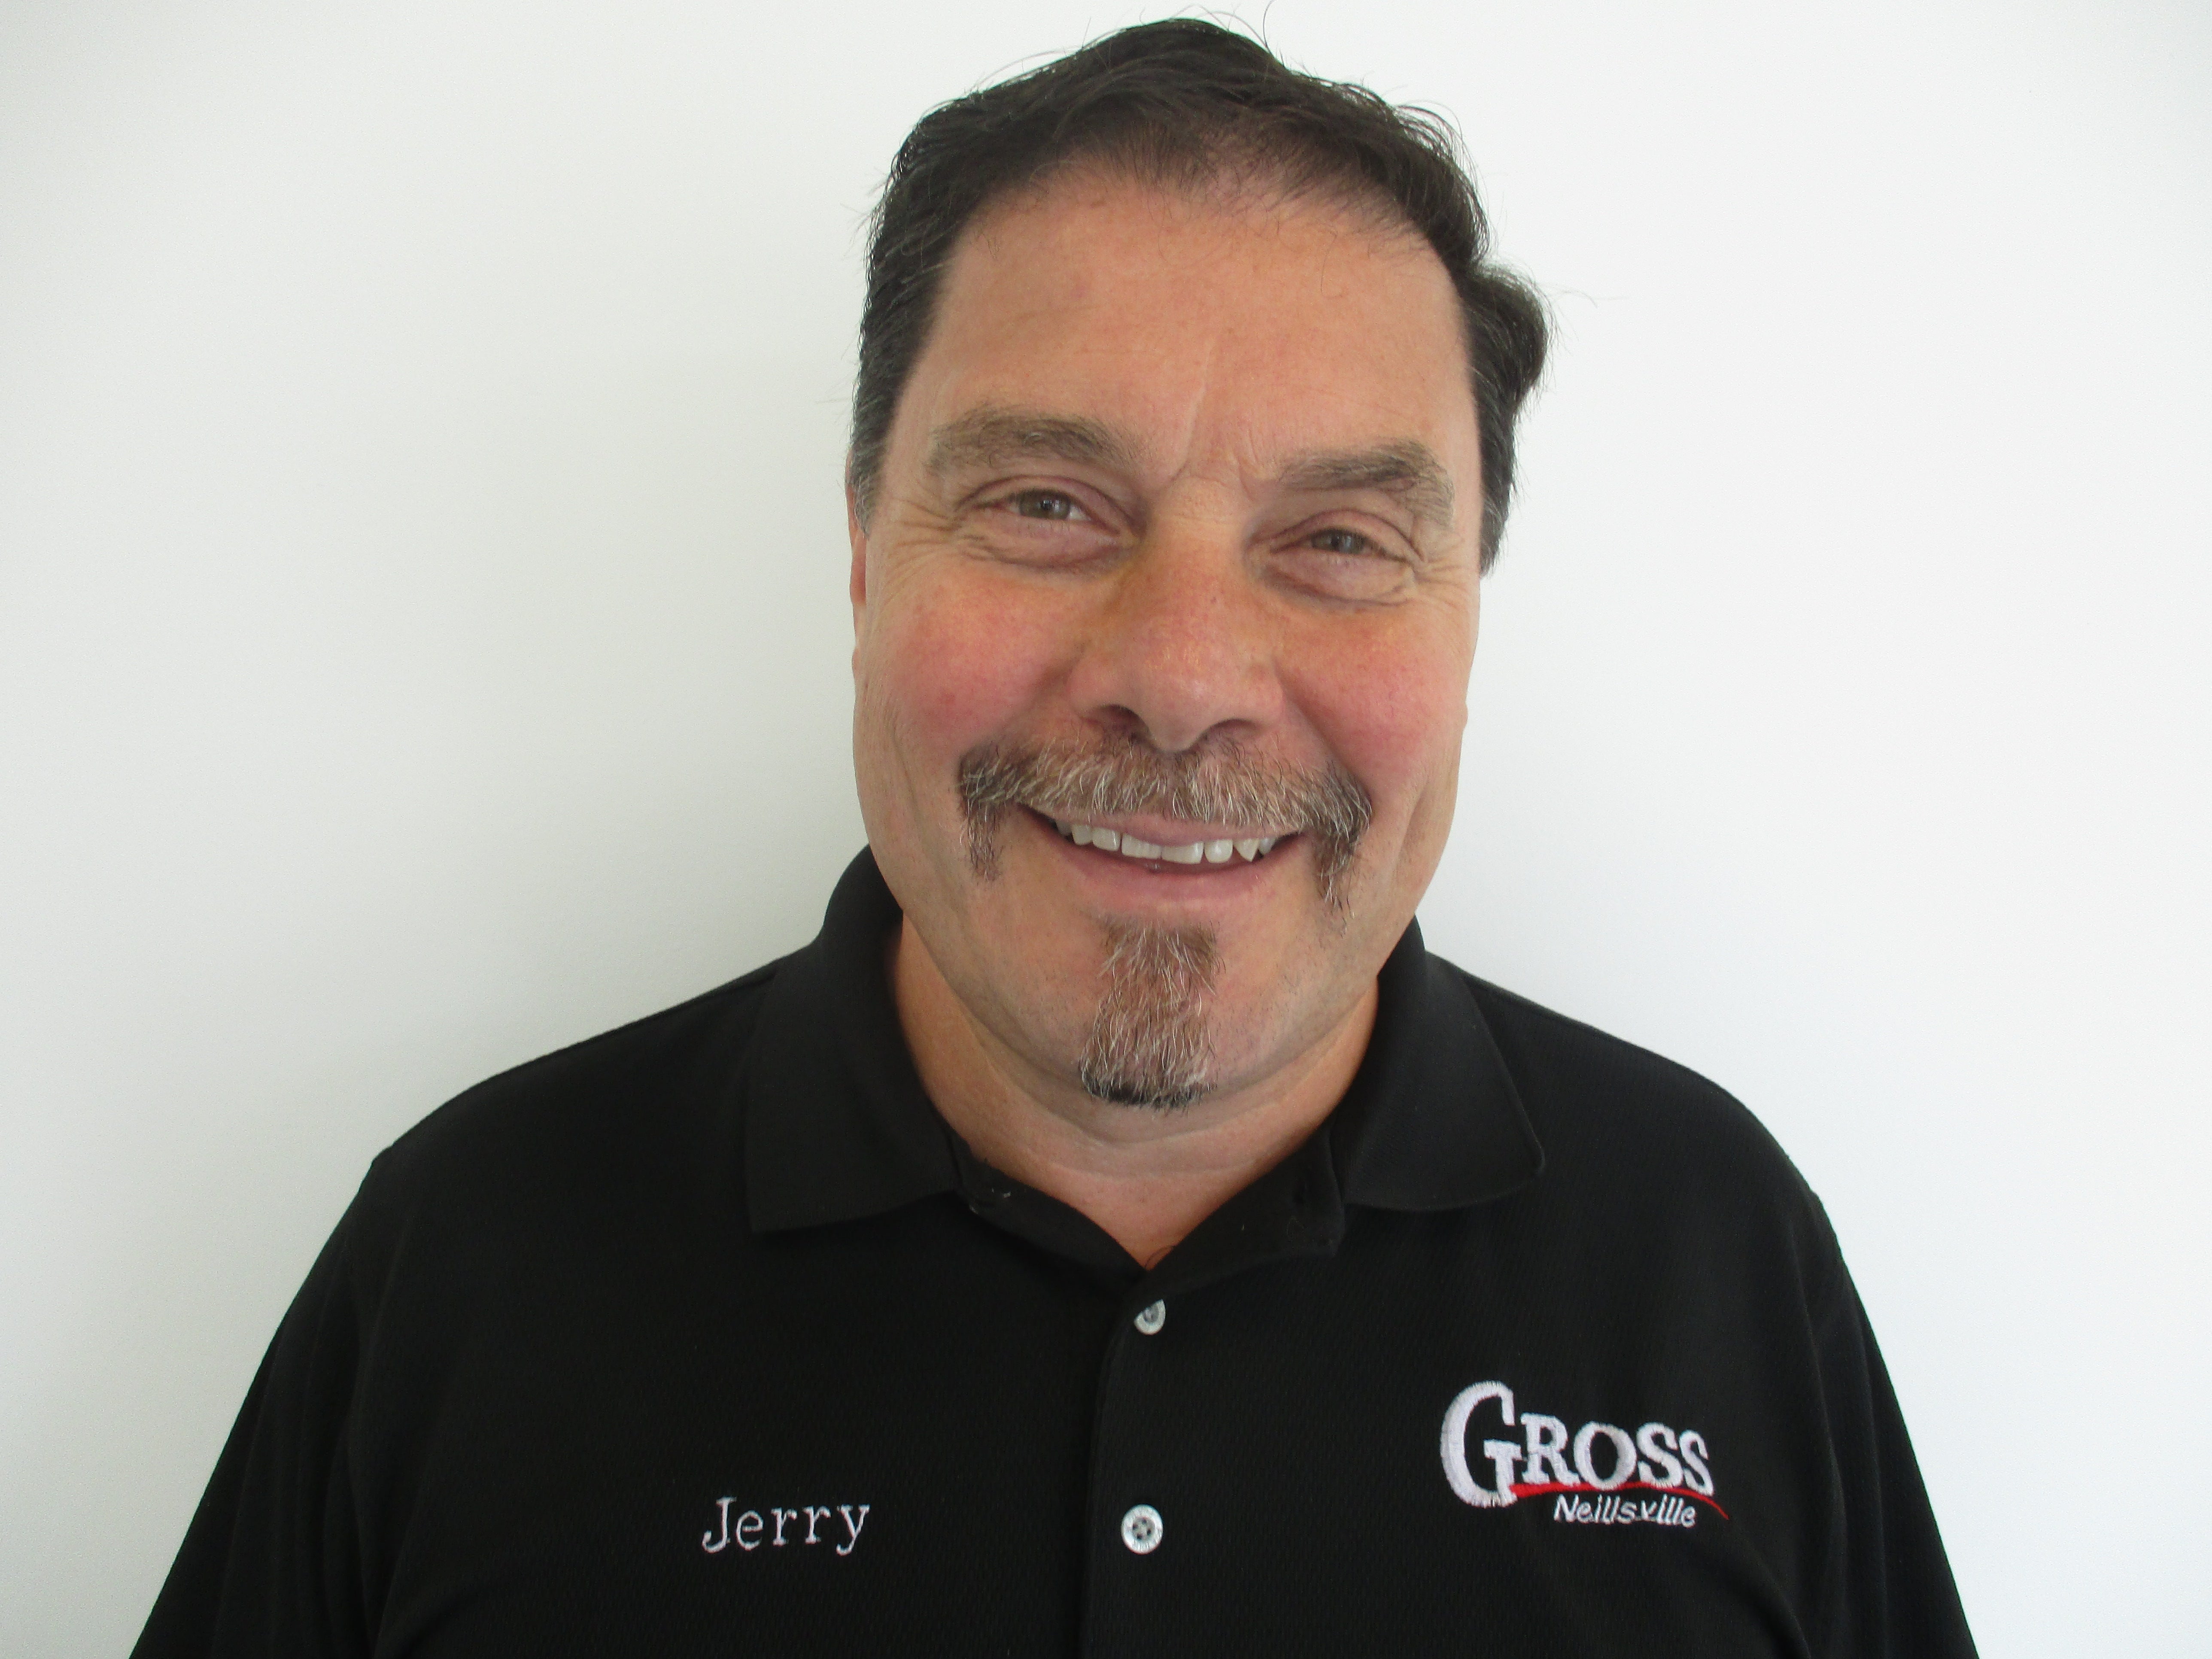 Jerry Gross 